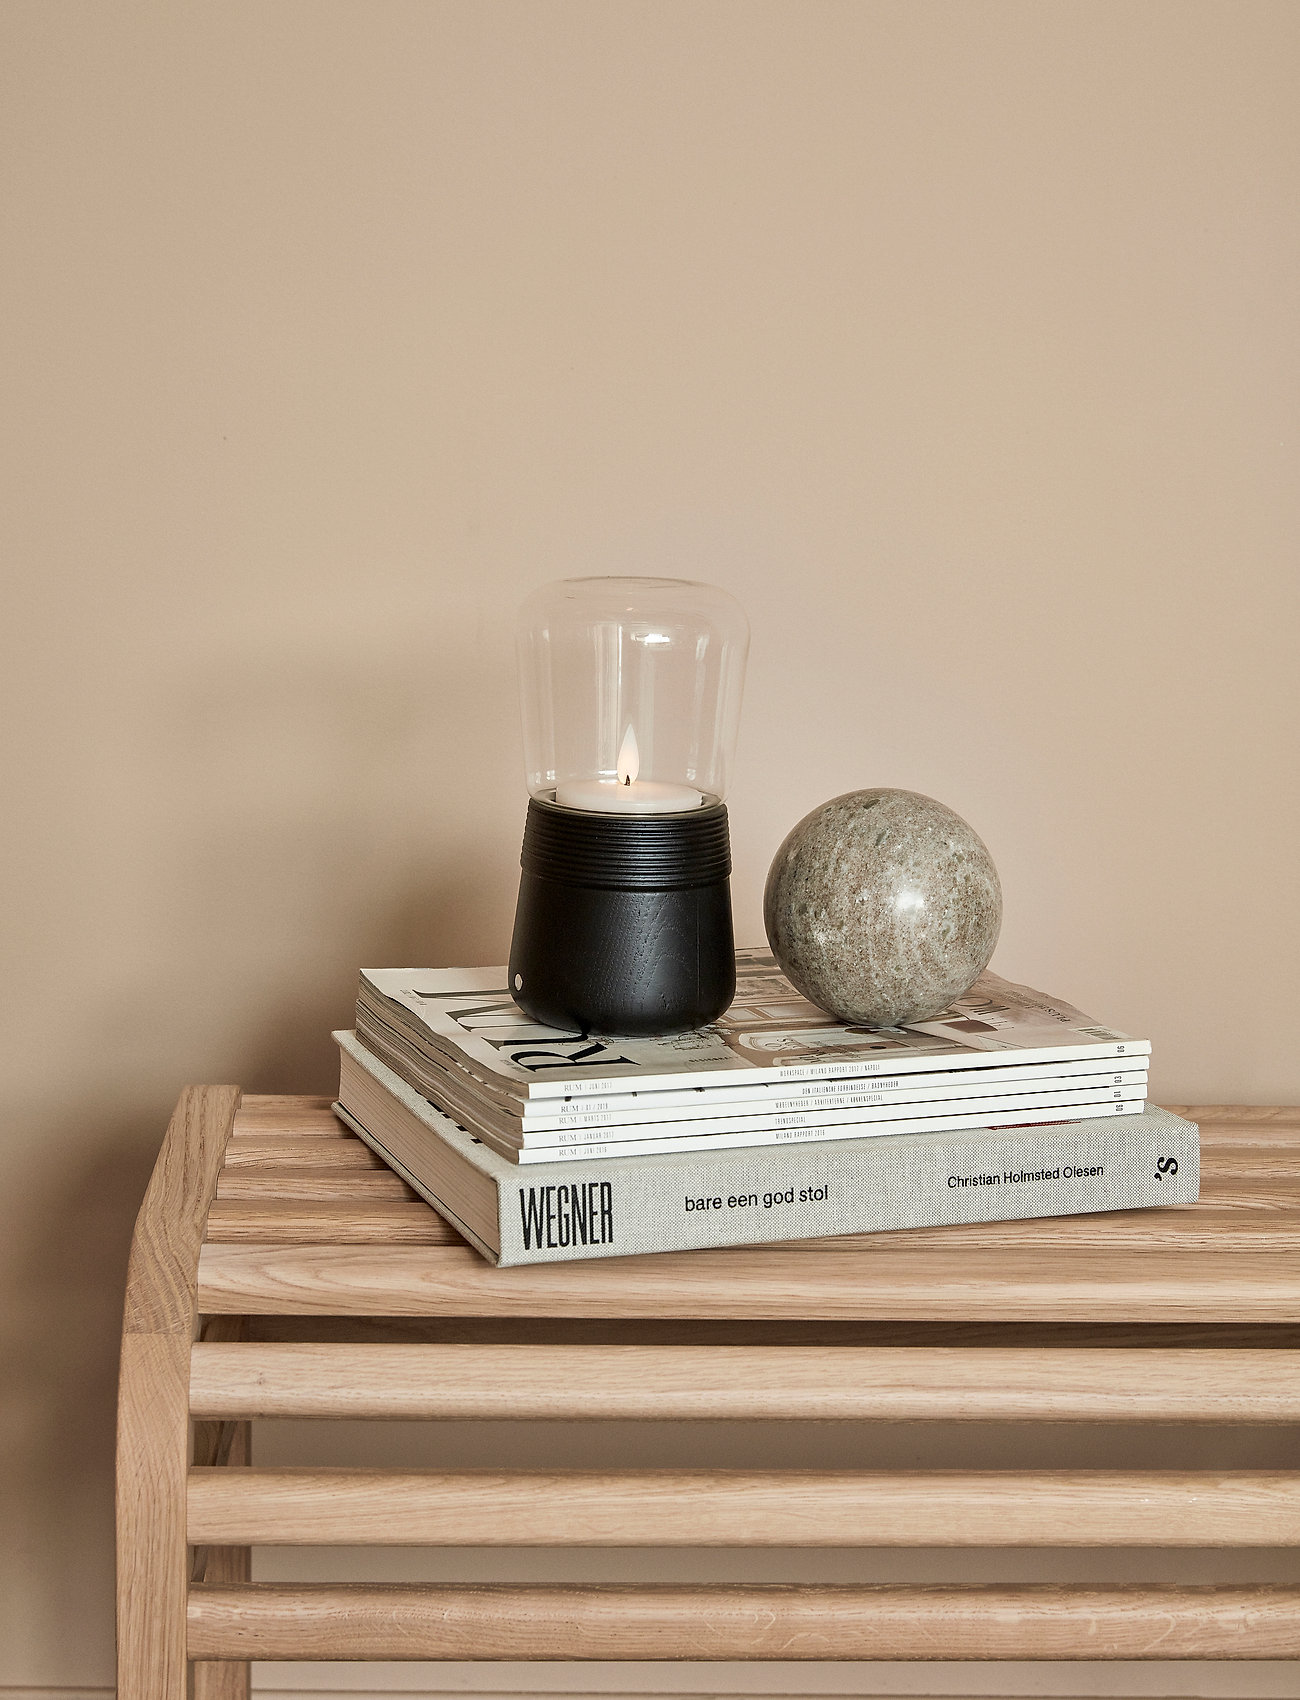 Andersen Furniture - Spinn Candle LED - verjaardagscadeaus - black - 1